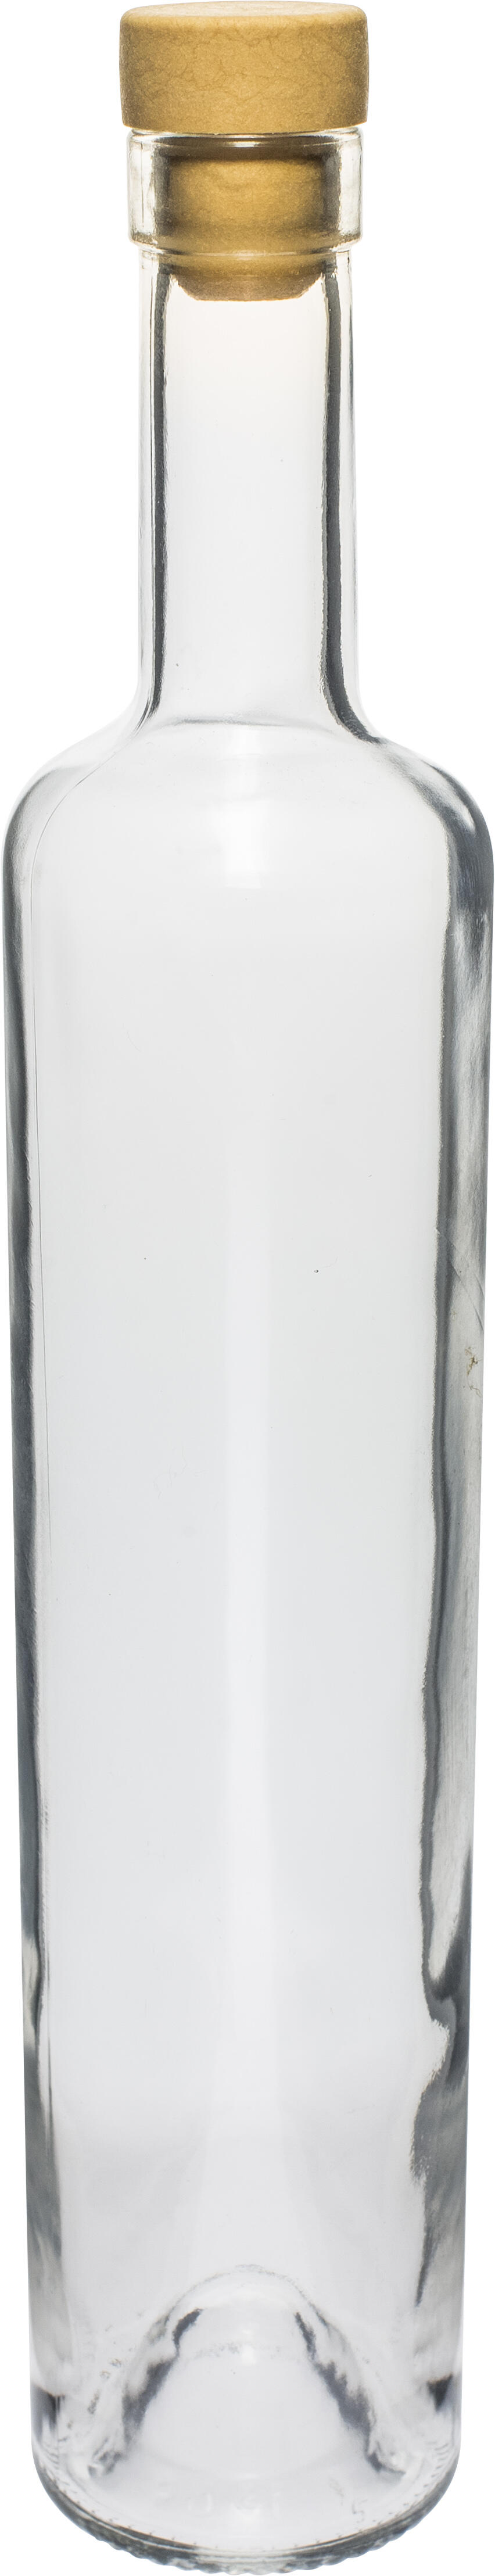 láhev 500ml MARINA skleněná se zátkou